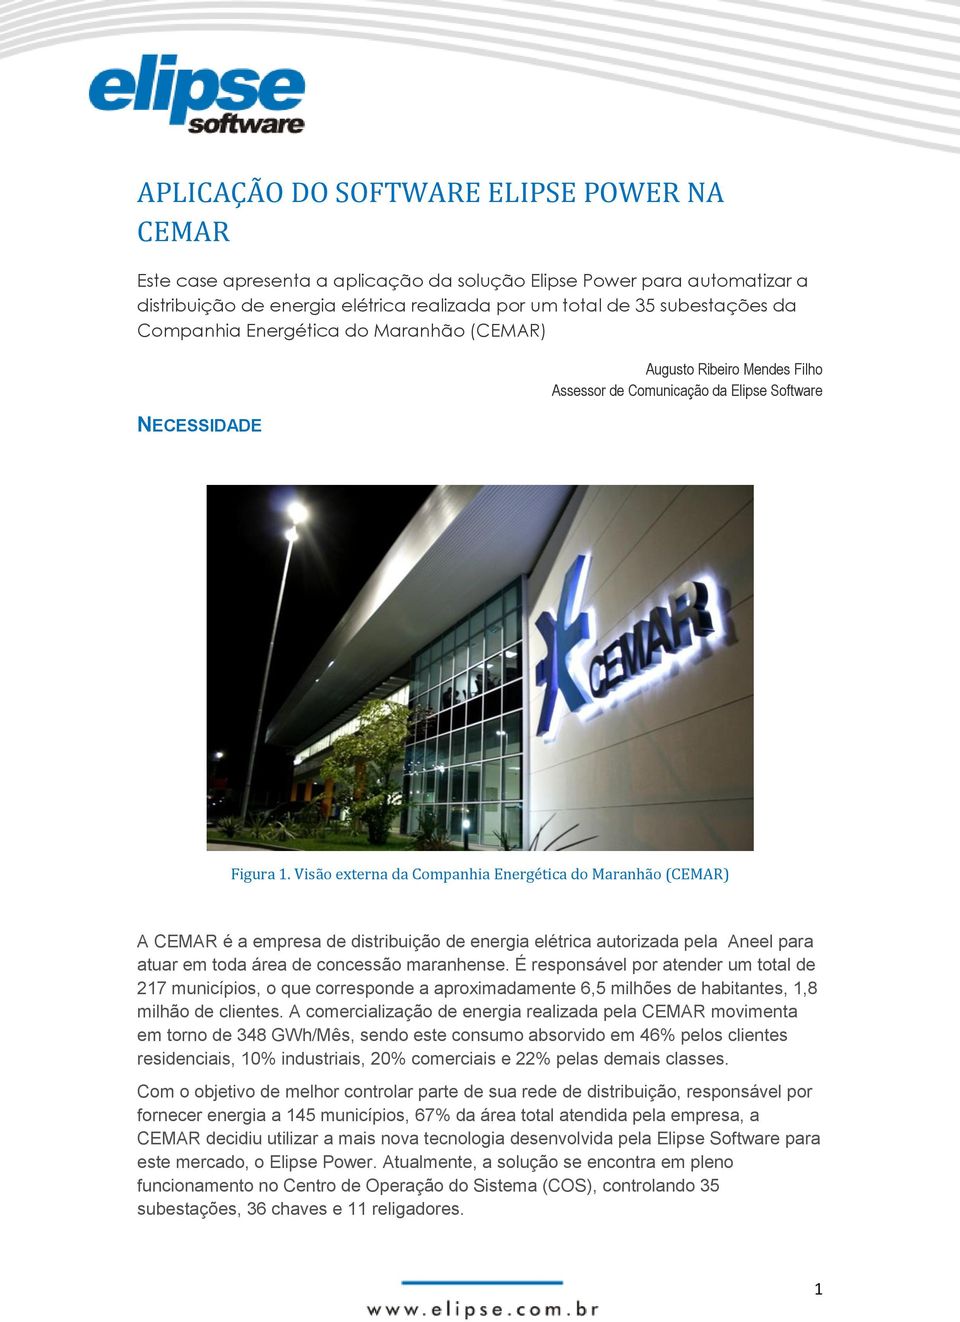 Visão externa da Companhia Energética do Maranhão (CEMAR) A CEMAR é a empresa de distribuição de energia elétrica autorizada pela Aneel para atuar em toda área de concessão maranhense.